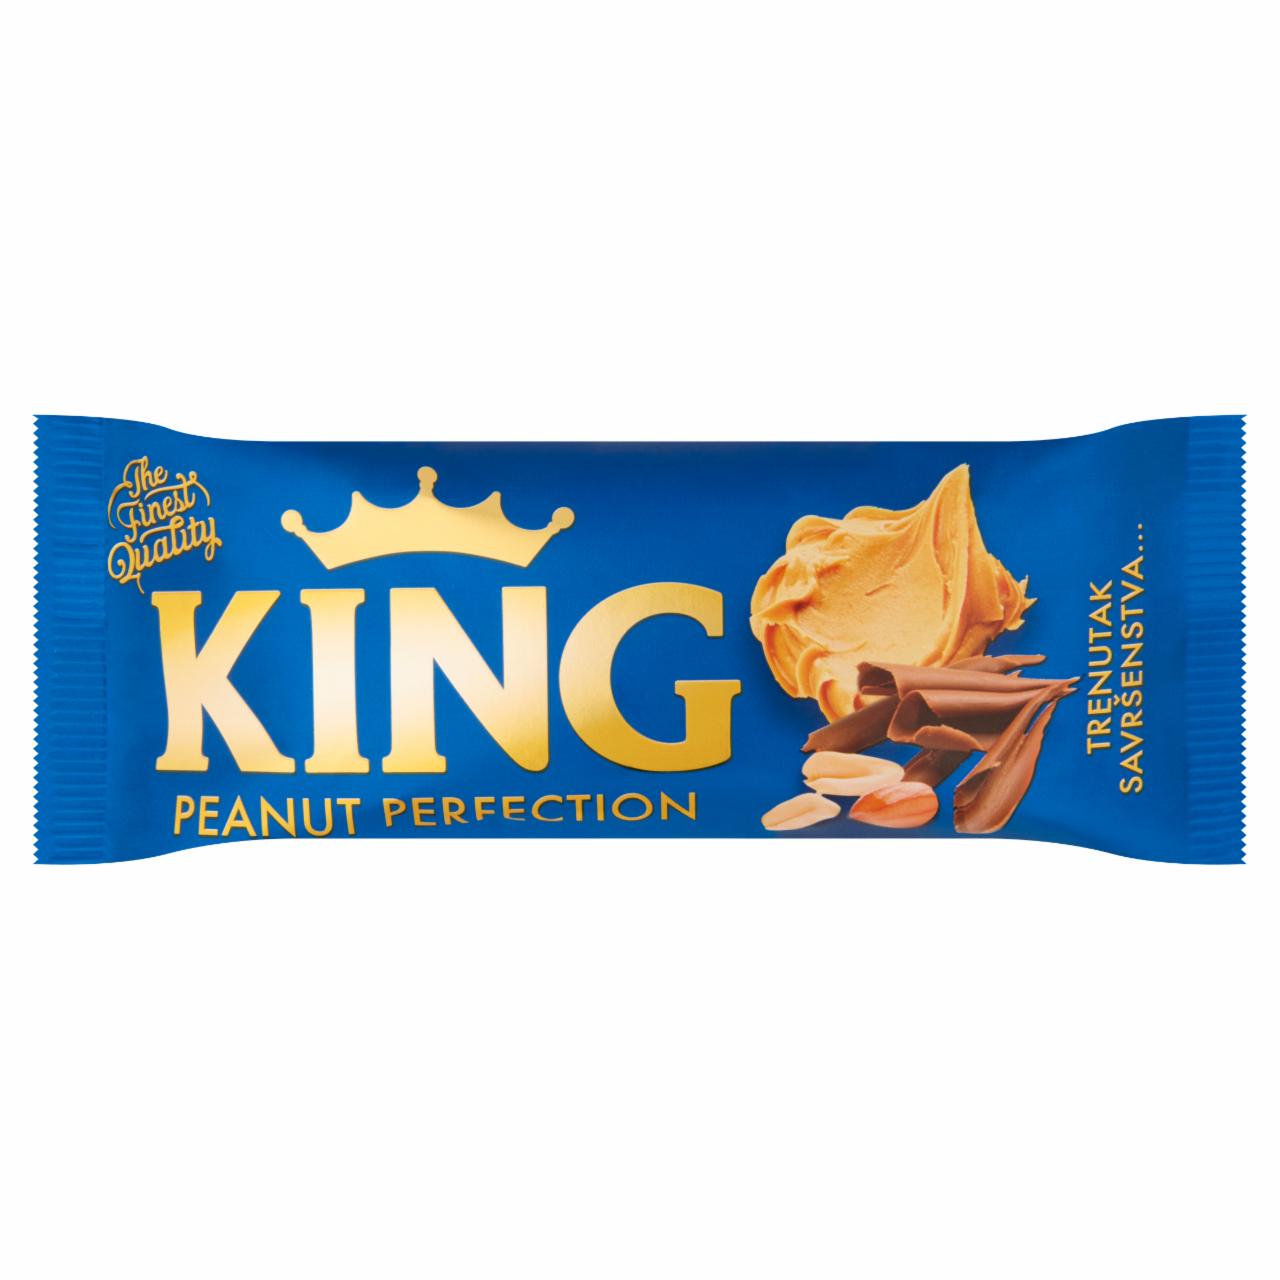 Képek - King Peanut Perfection földimogyorós jégkrém tejcsokoládéval leöntve 110 ml